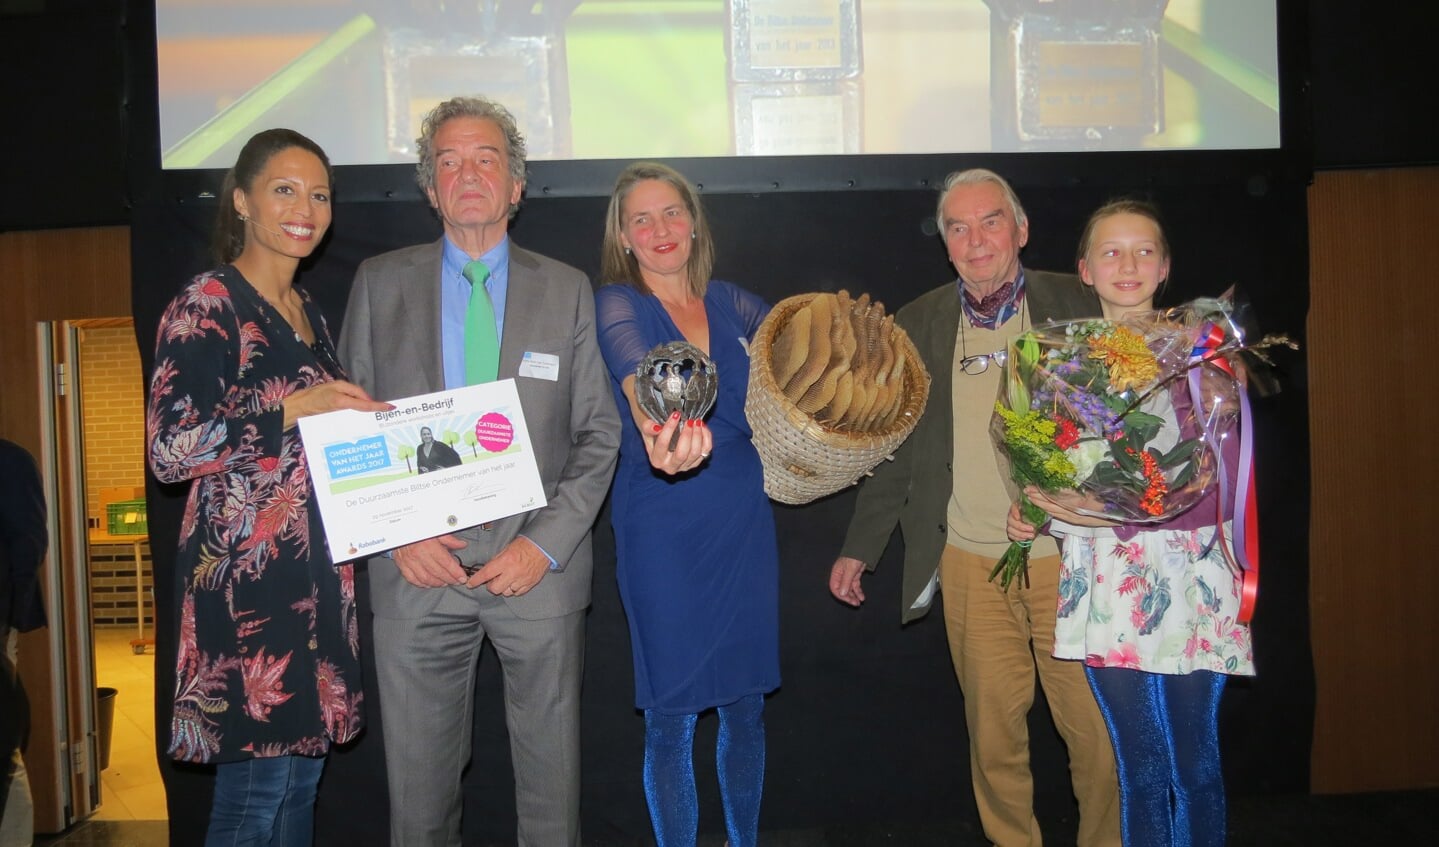 Sonne Copijn met de prijs voor duurzaamste onderneming, met vader en dochter.